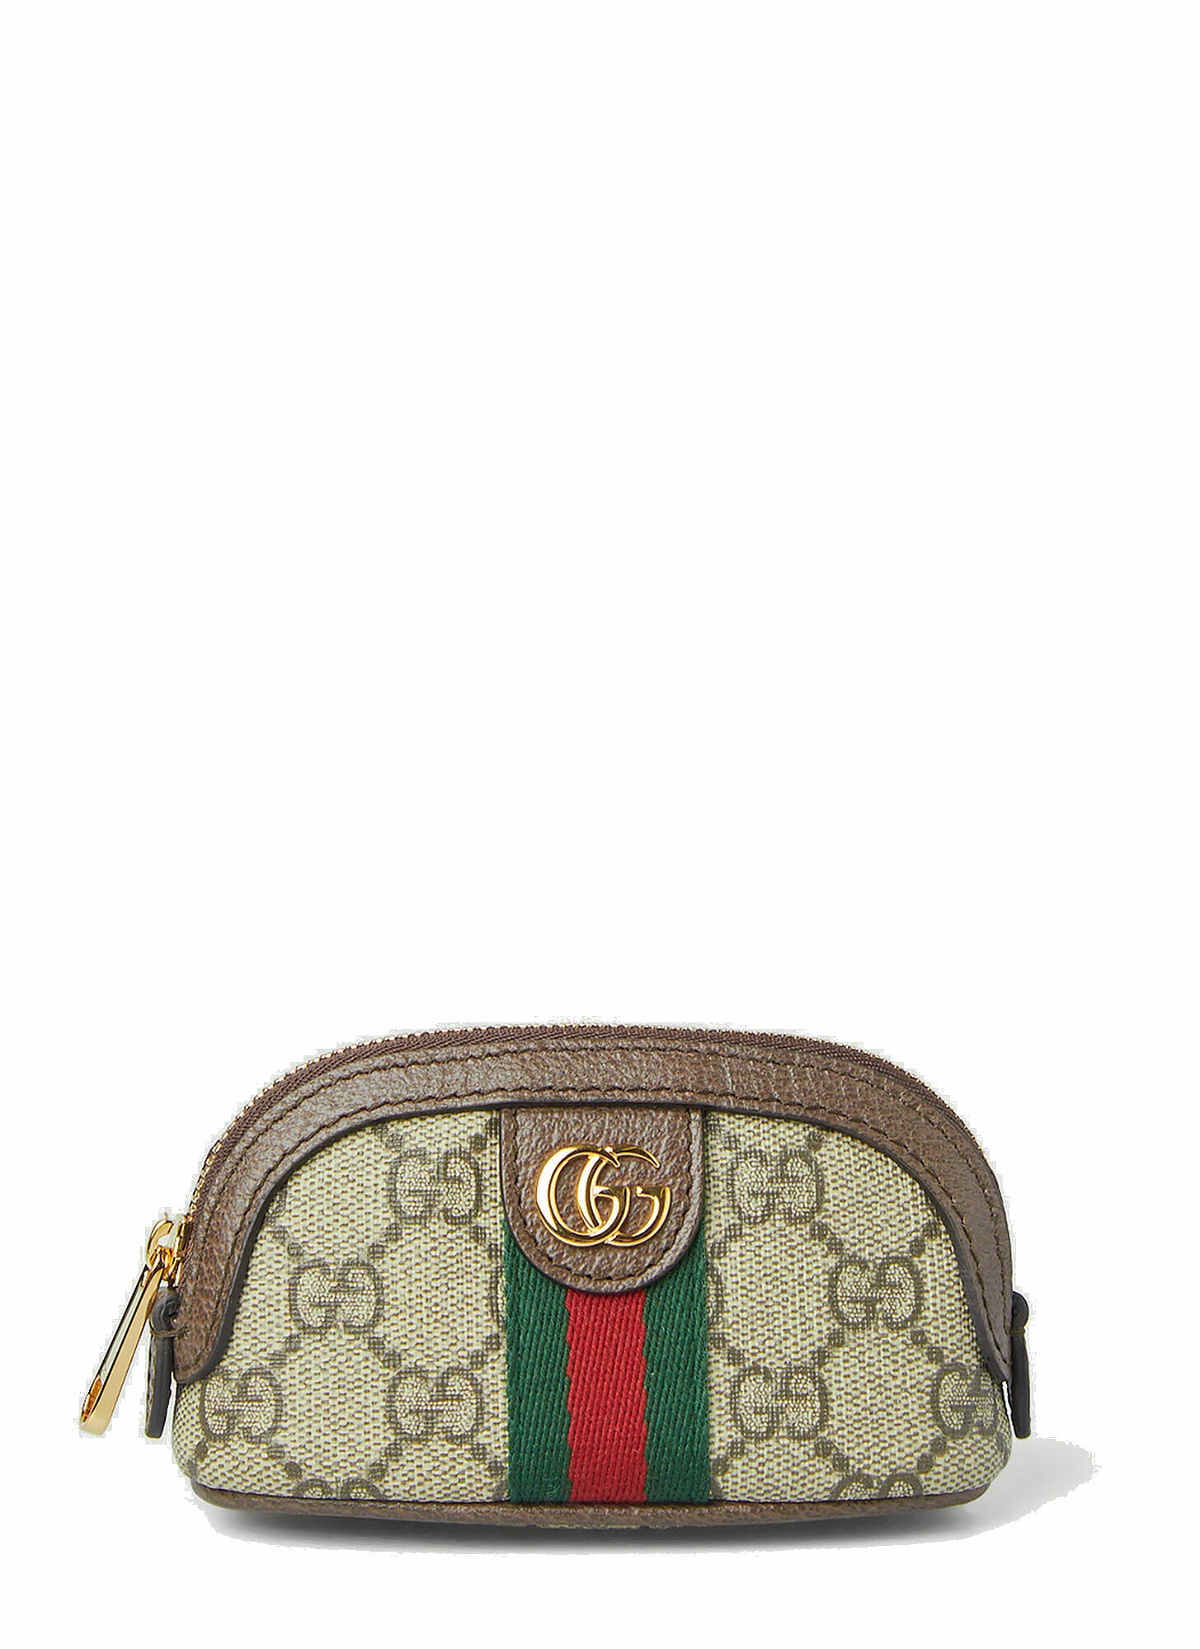 Gucci Disney x Gucci ©Disney GG Supreme Wallet • Fashion Brands Outlet